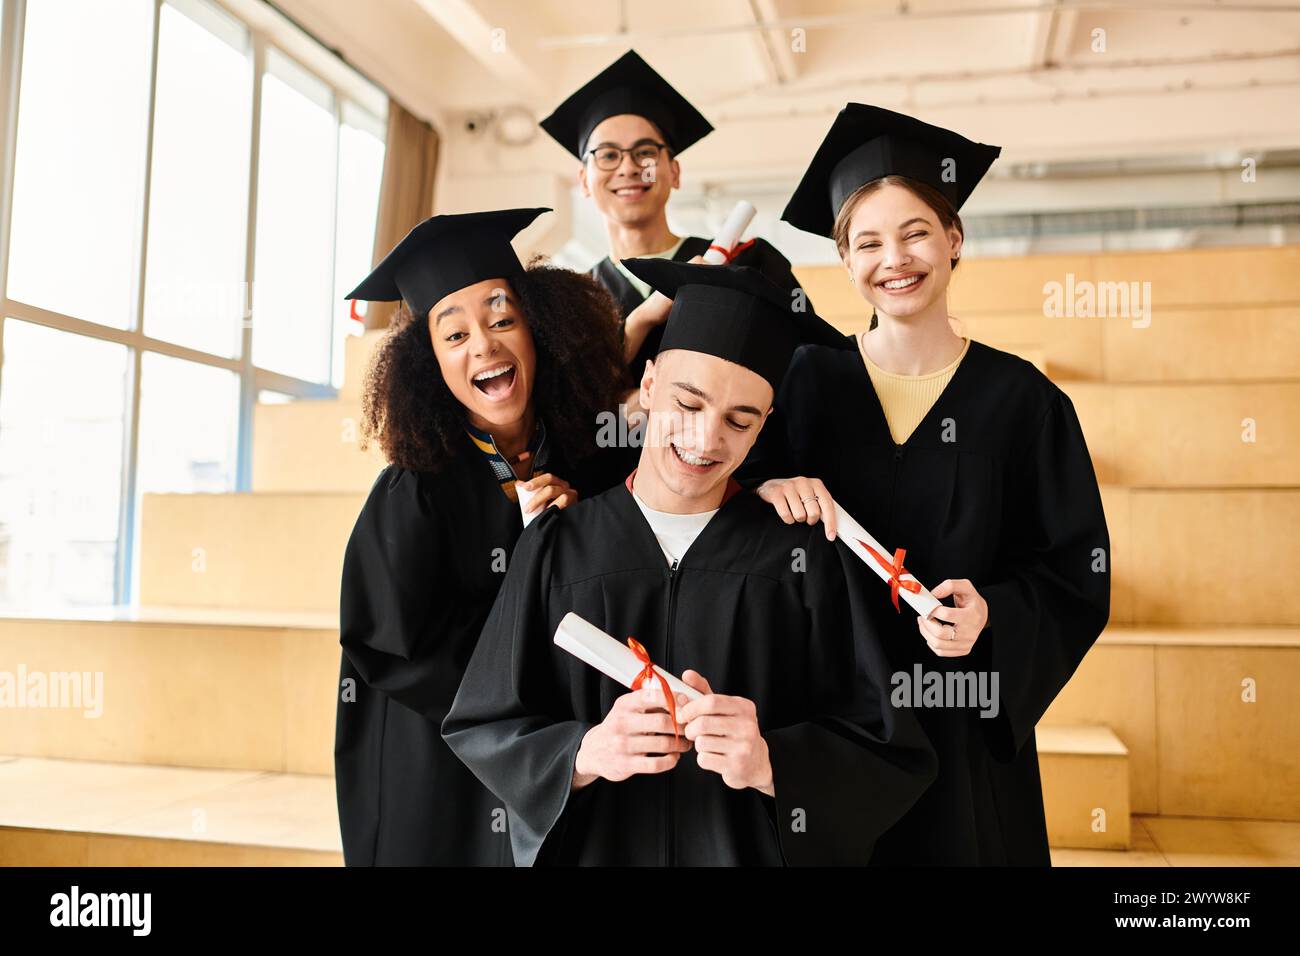 Eine Gruppe von Studenten in Abschlusskleidern und -Mützen posiert glücklich für ein Foto, um ihre akademische Leistung zu feiern. Stockfoto